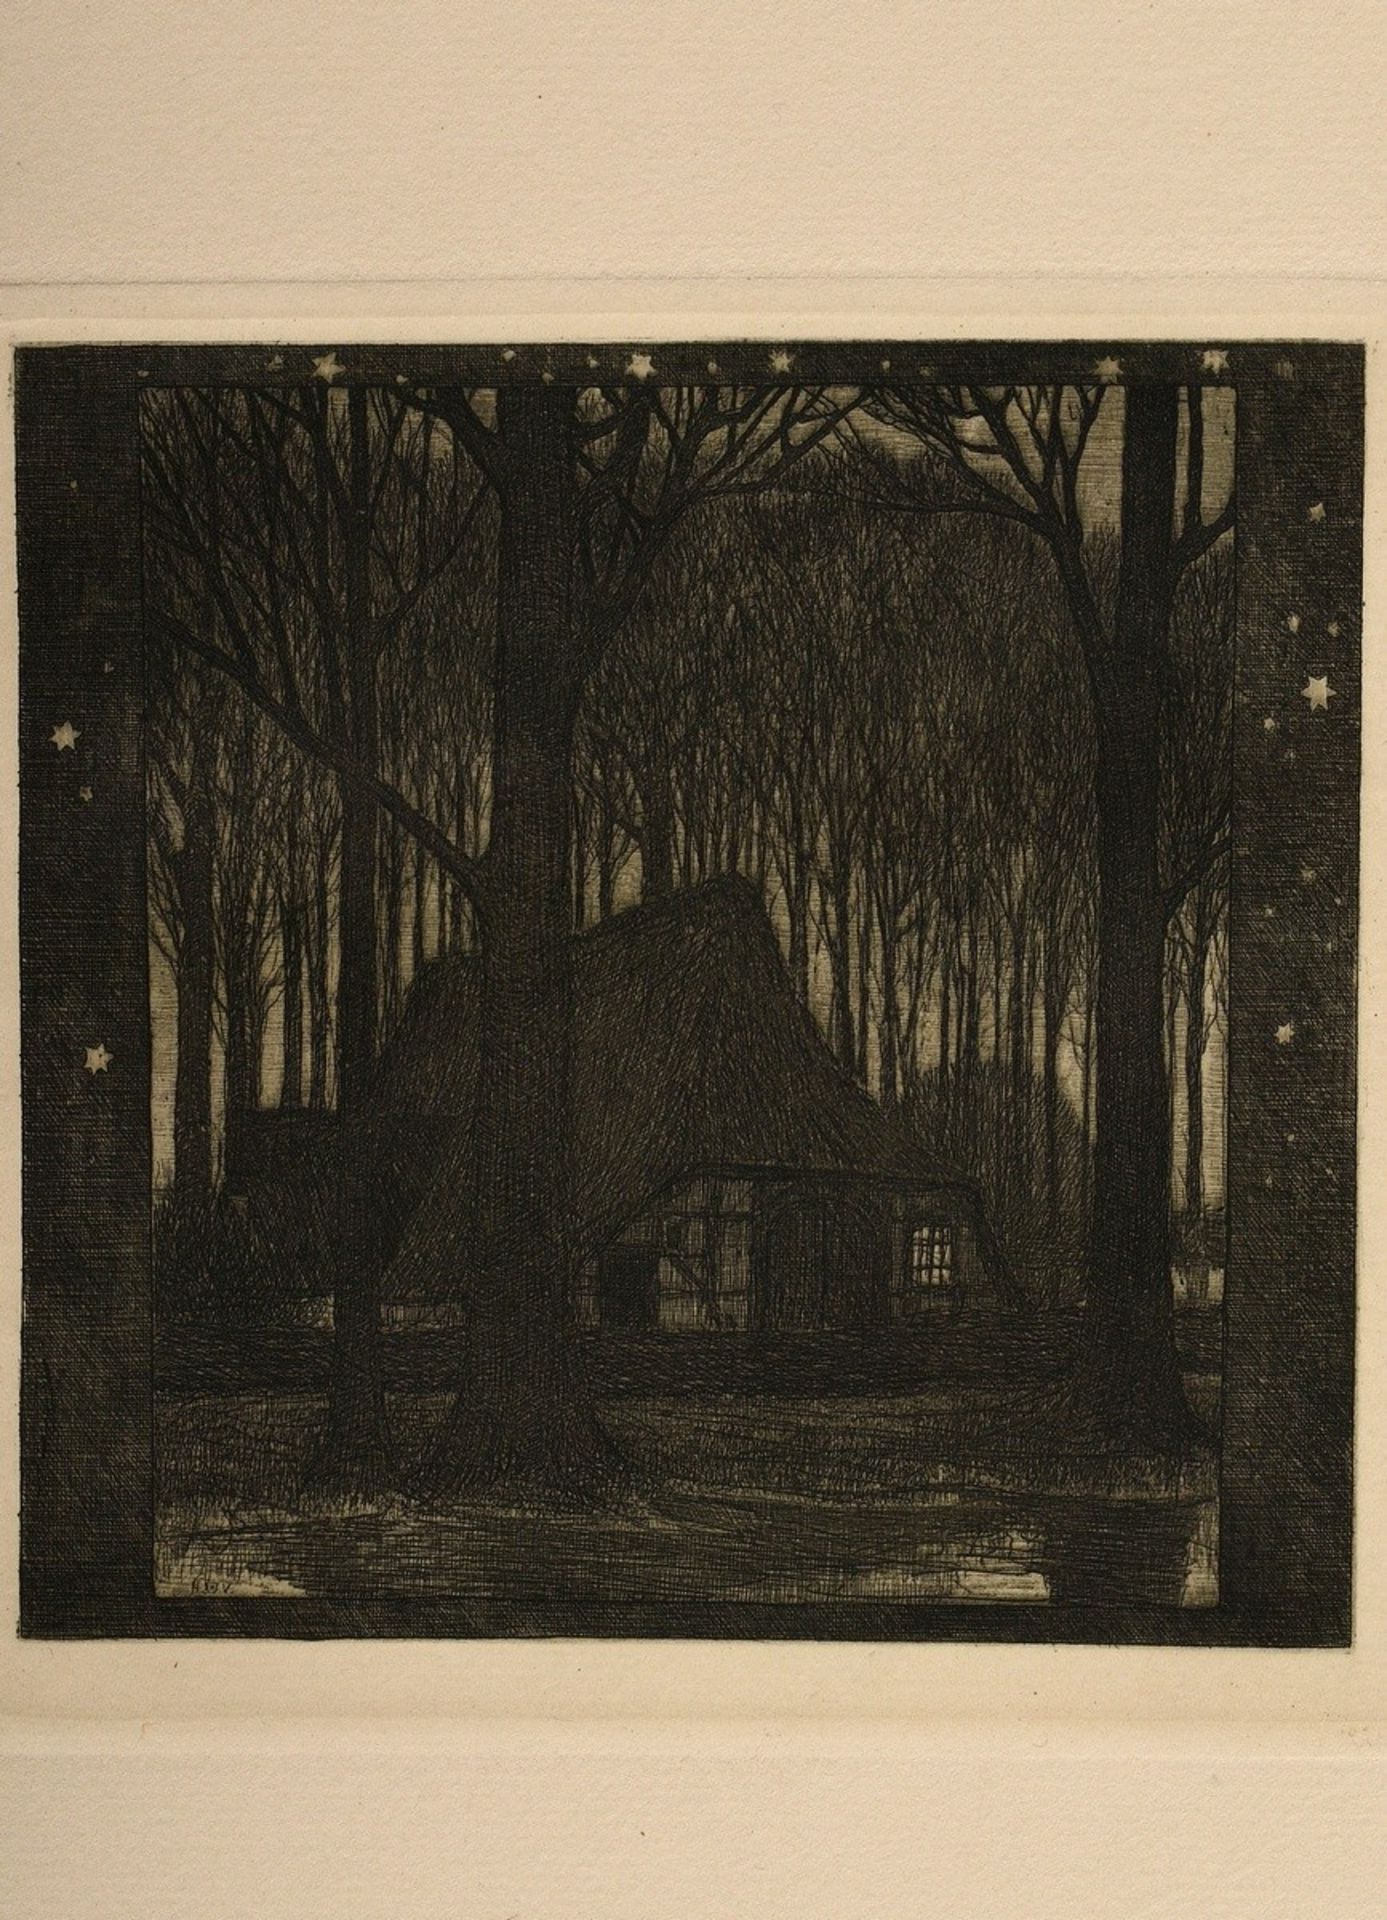 Vogeler, Heinrich (1872-1942) "An den Frühling" 1899/1901, Mappe mit 10 Radierungen und Vorblatt, P - Bild 9 aus 25